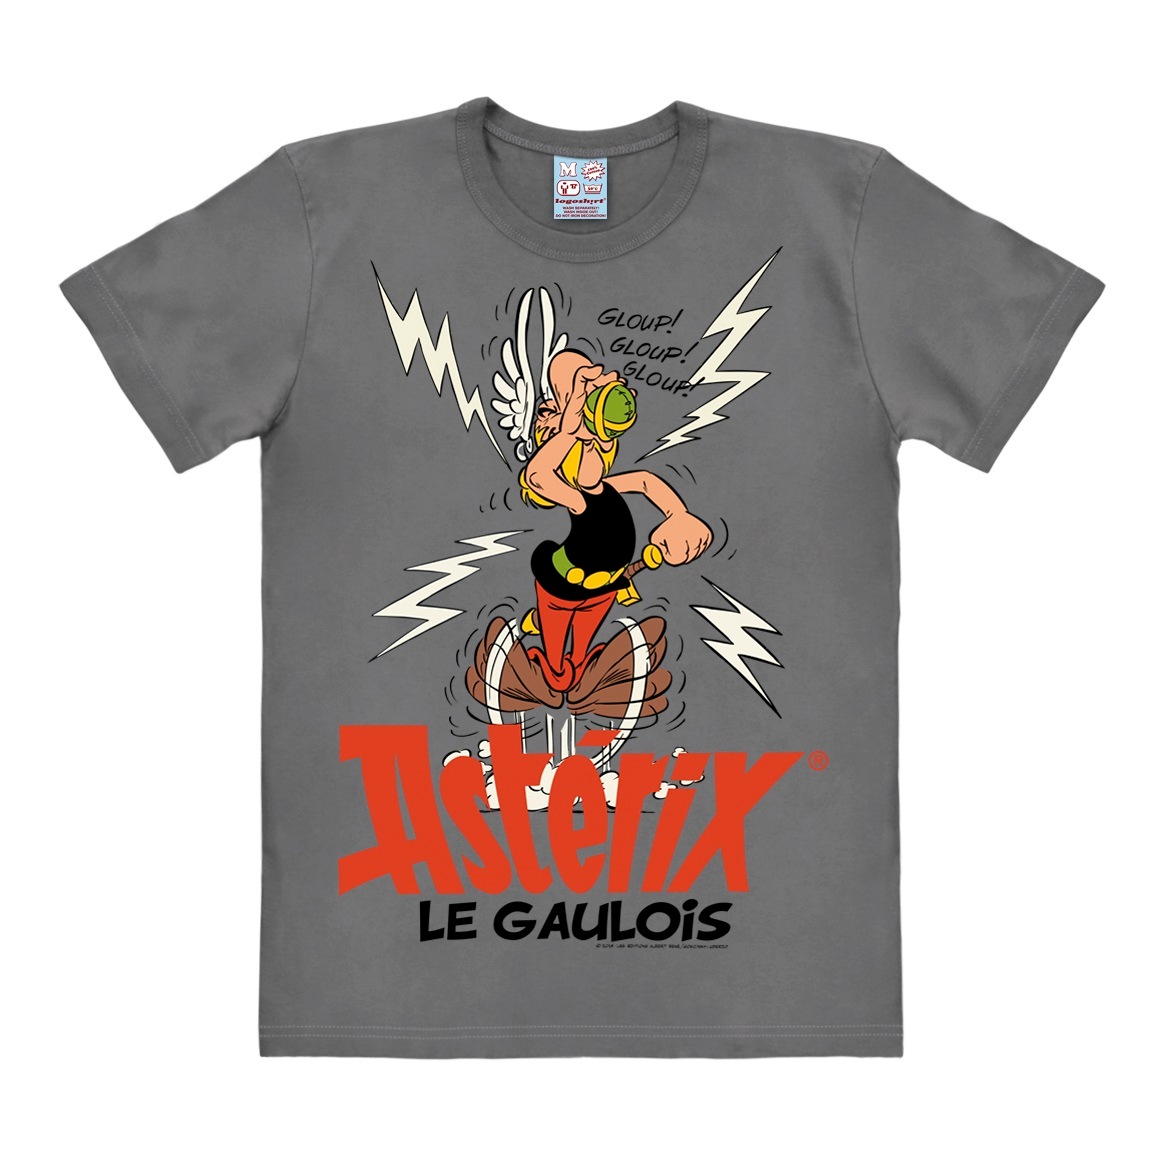 LOGOSHIRT T-Shirt »Asterix - Der Gallier«, mit Retro-Print